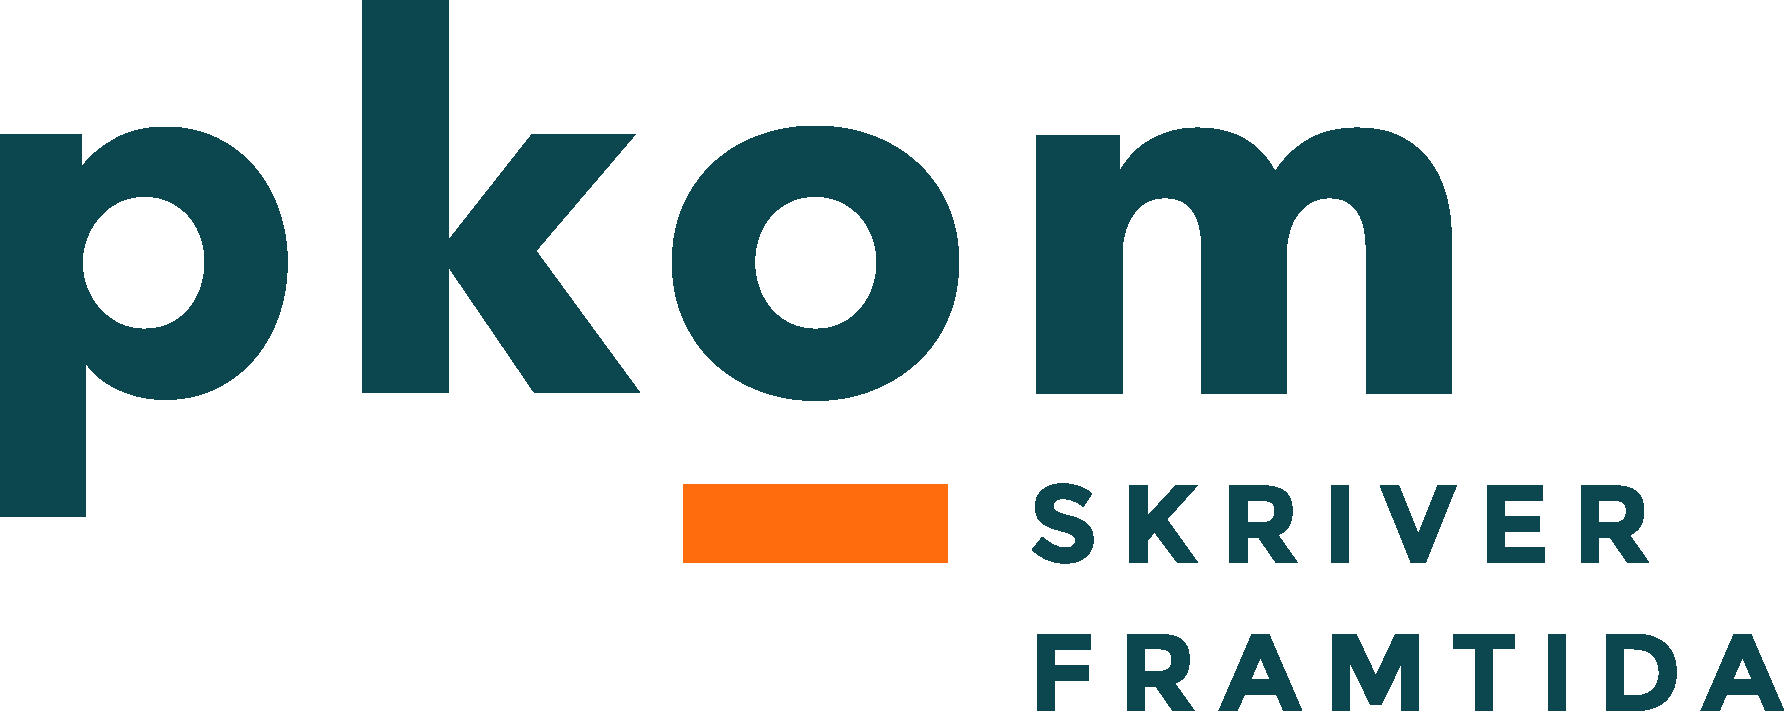 pkom logo